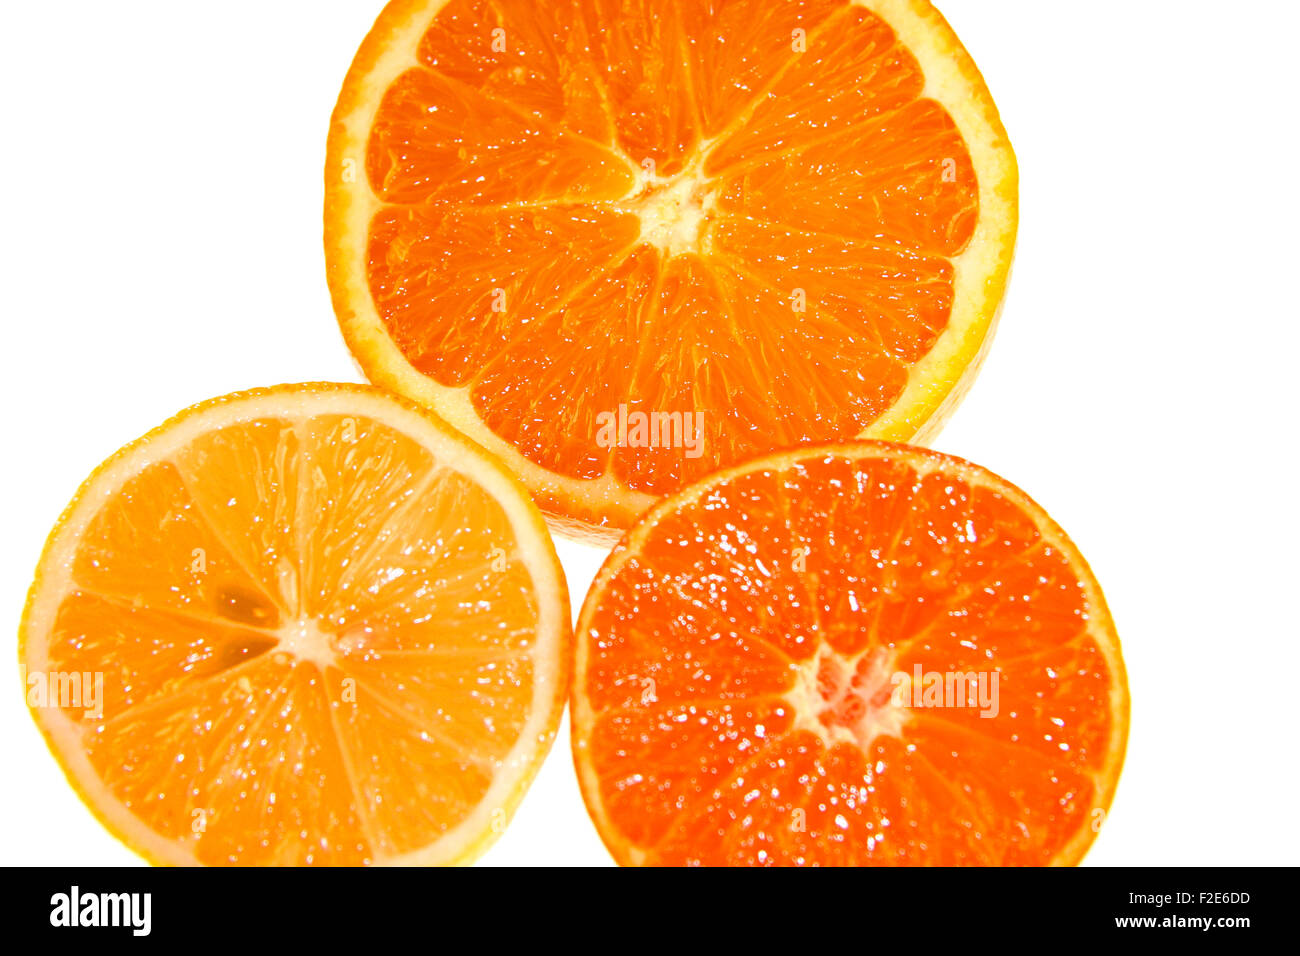 Suedfruechte: Zitrone, Mandarine, Clementine, Orange - Symbolbild Nahrungsmittel . Stock Photo